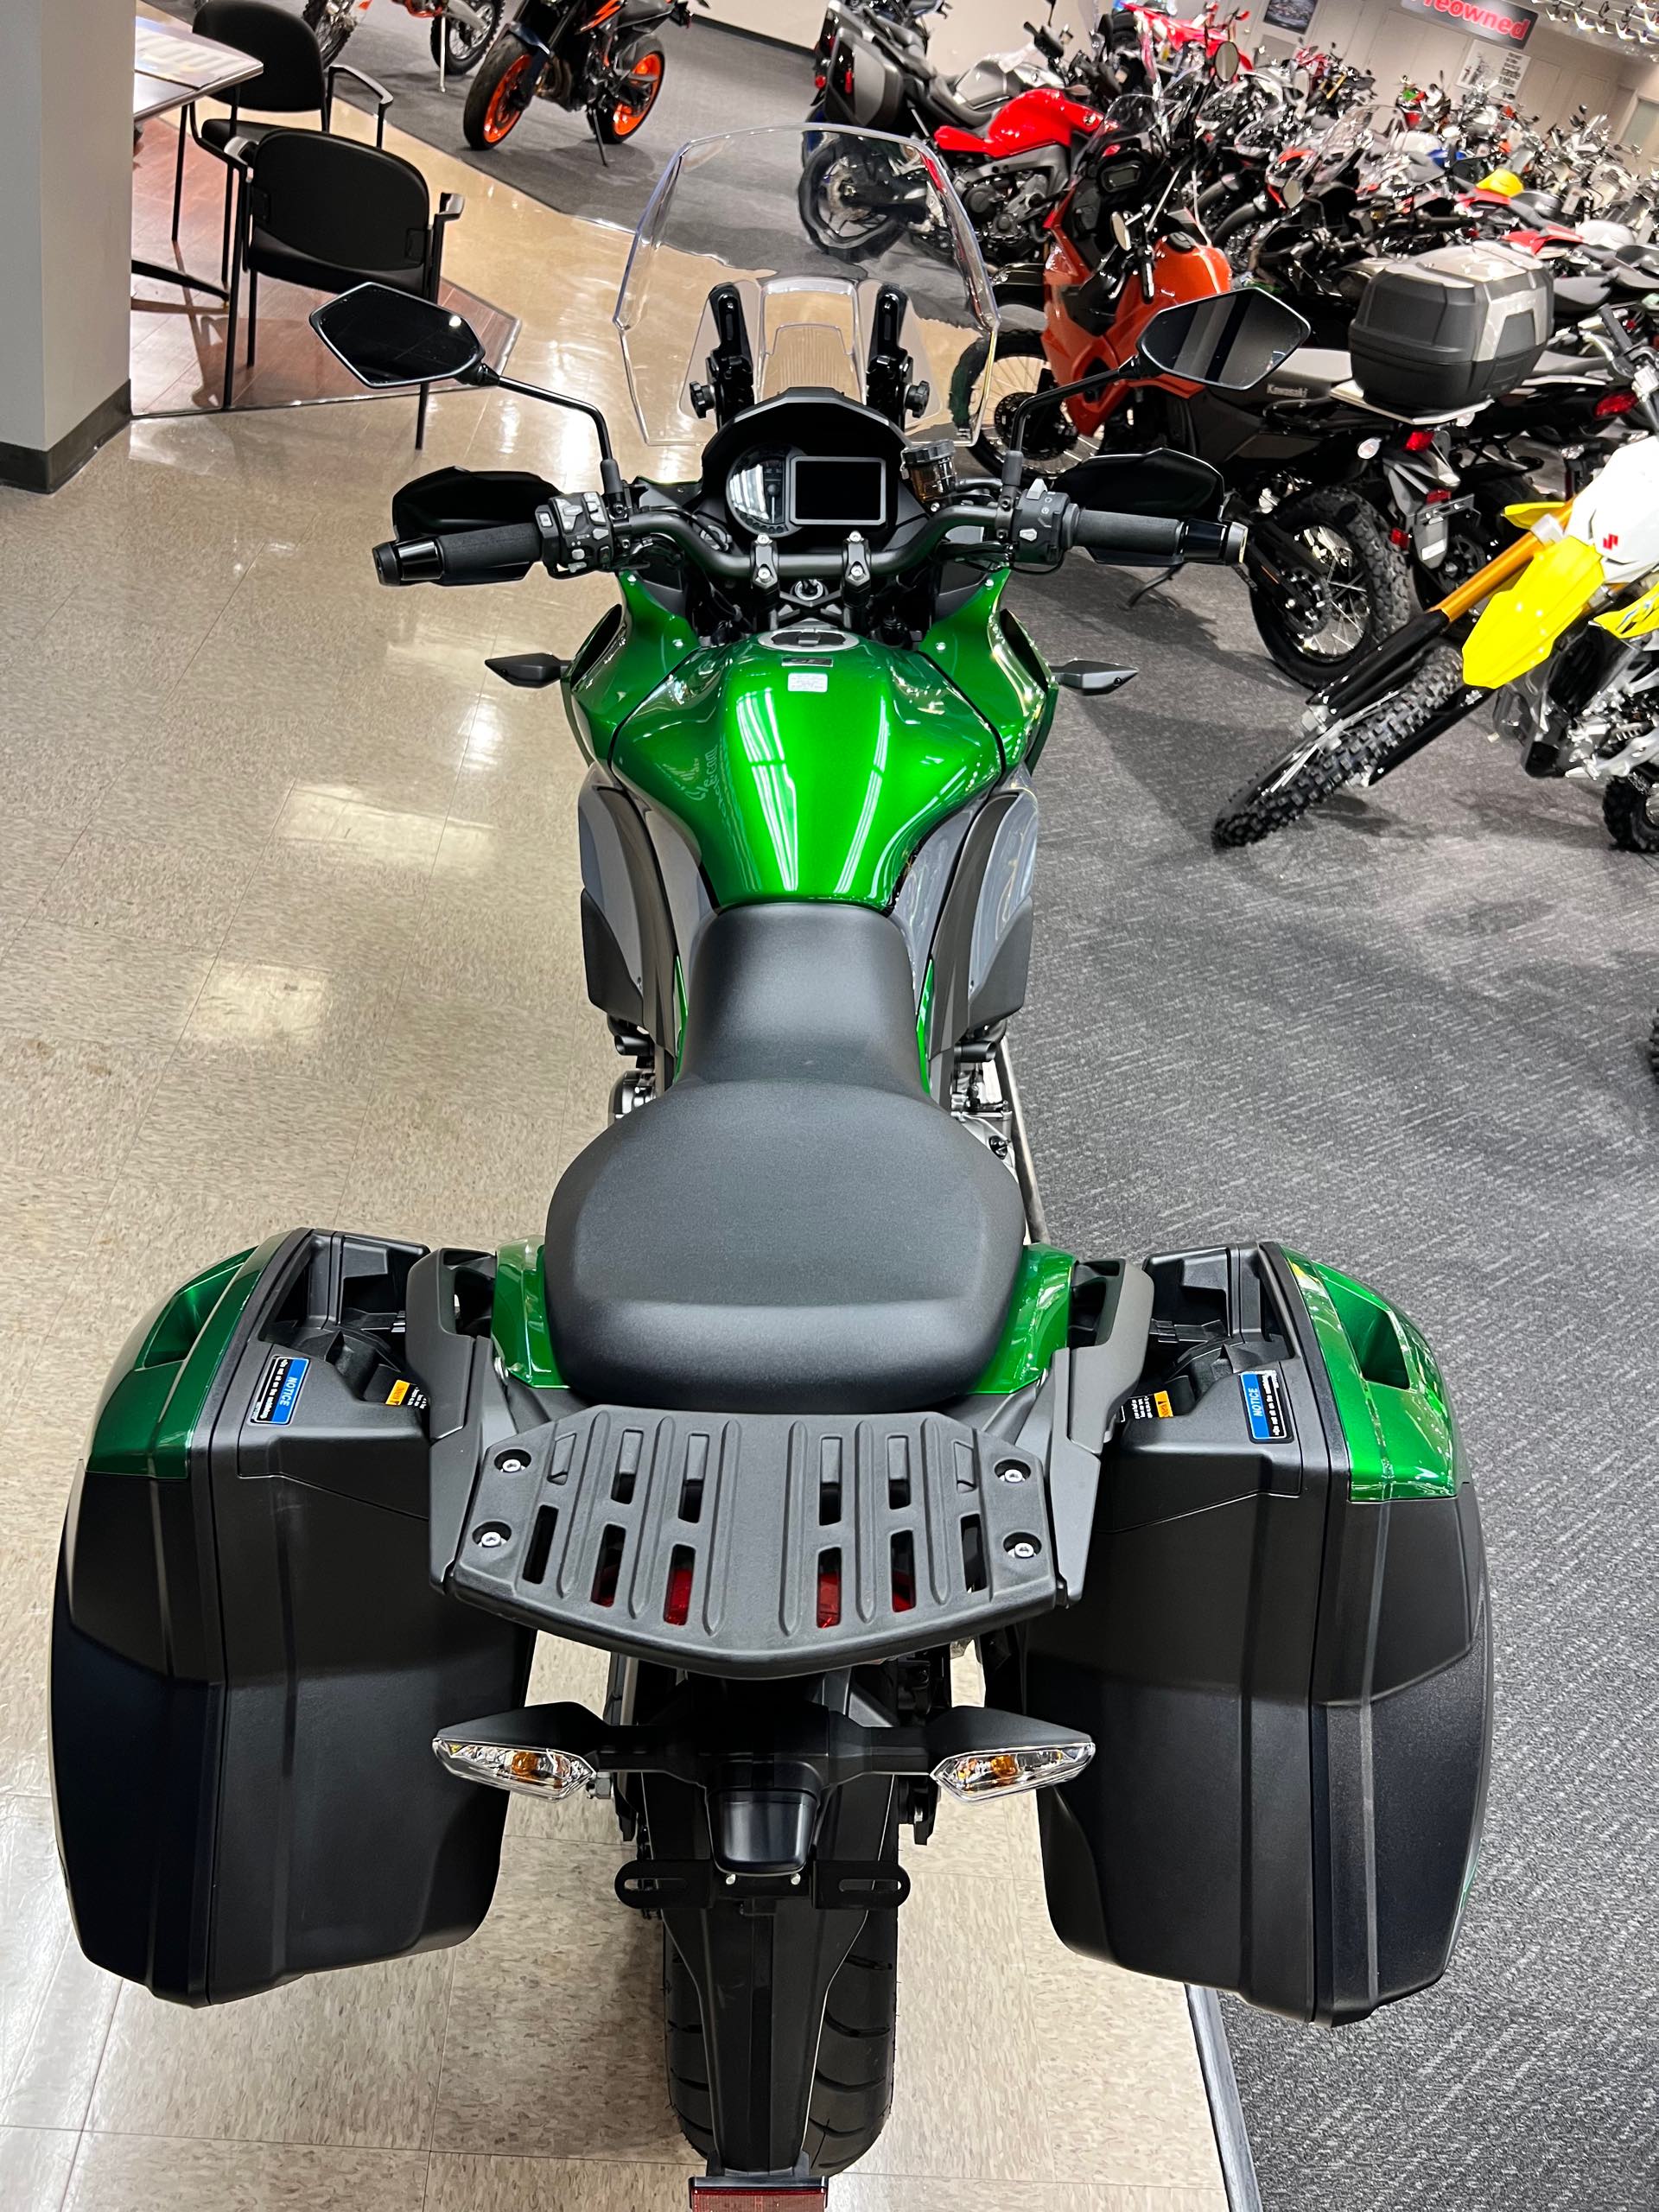 2020 Kawasaki Versys 1000 SE LT+ at Sloans Motorcycle ATV, Murfreesboro, TN, 37129